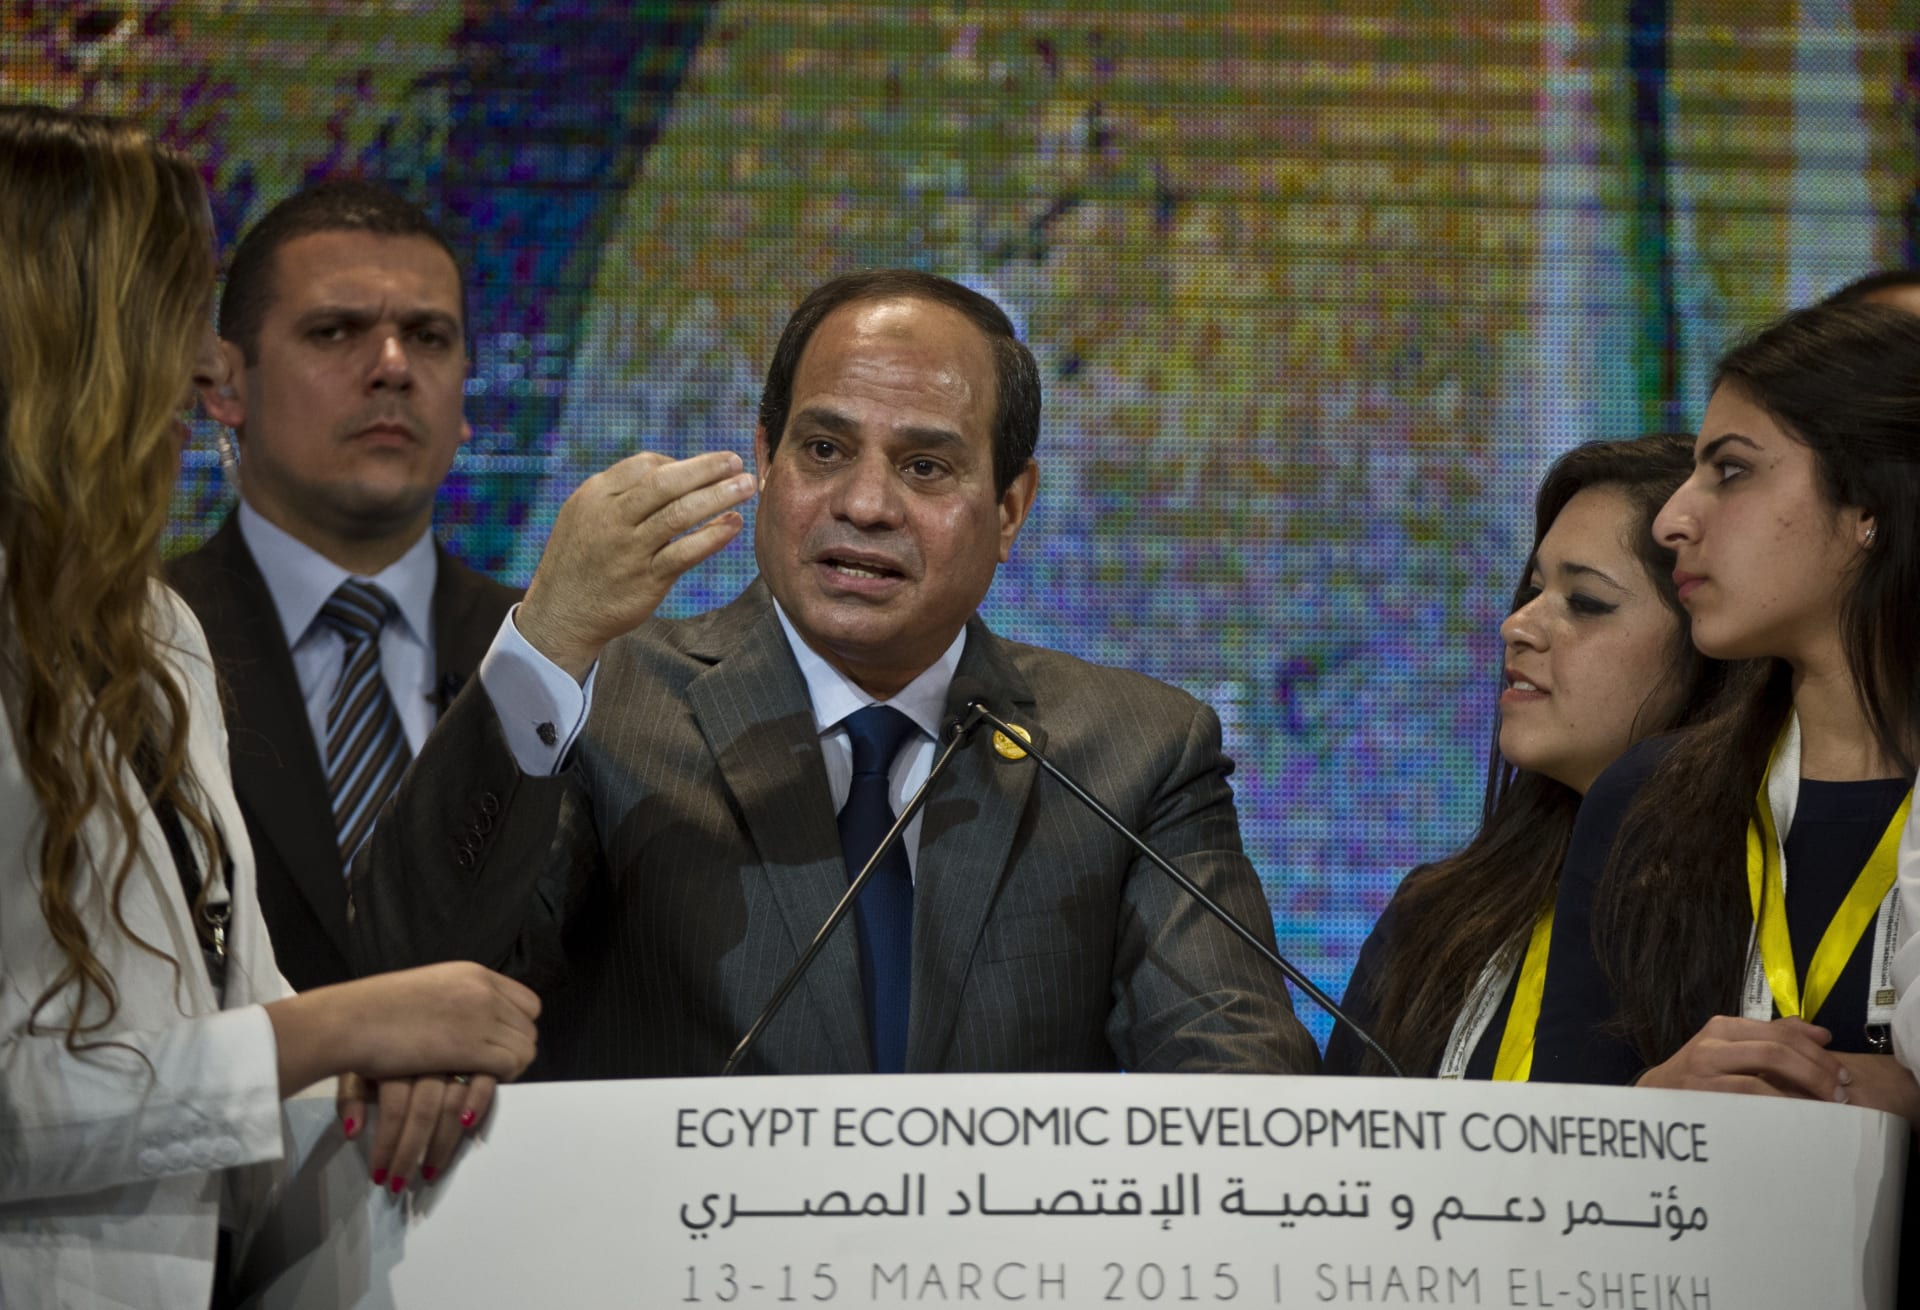 إبراهيم عوض يكتب: مقاربة سياسية لعملية الإصلاح المالي والاقتصادي بمصر